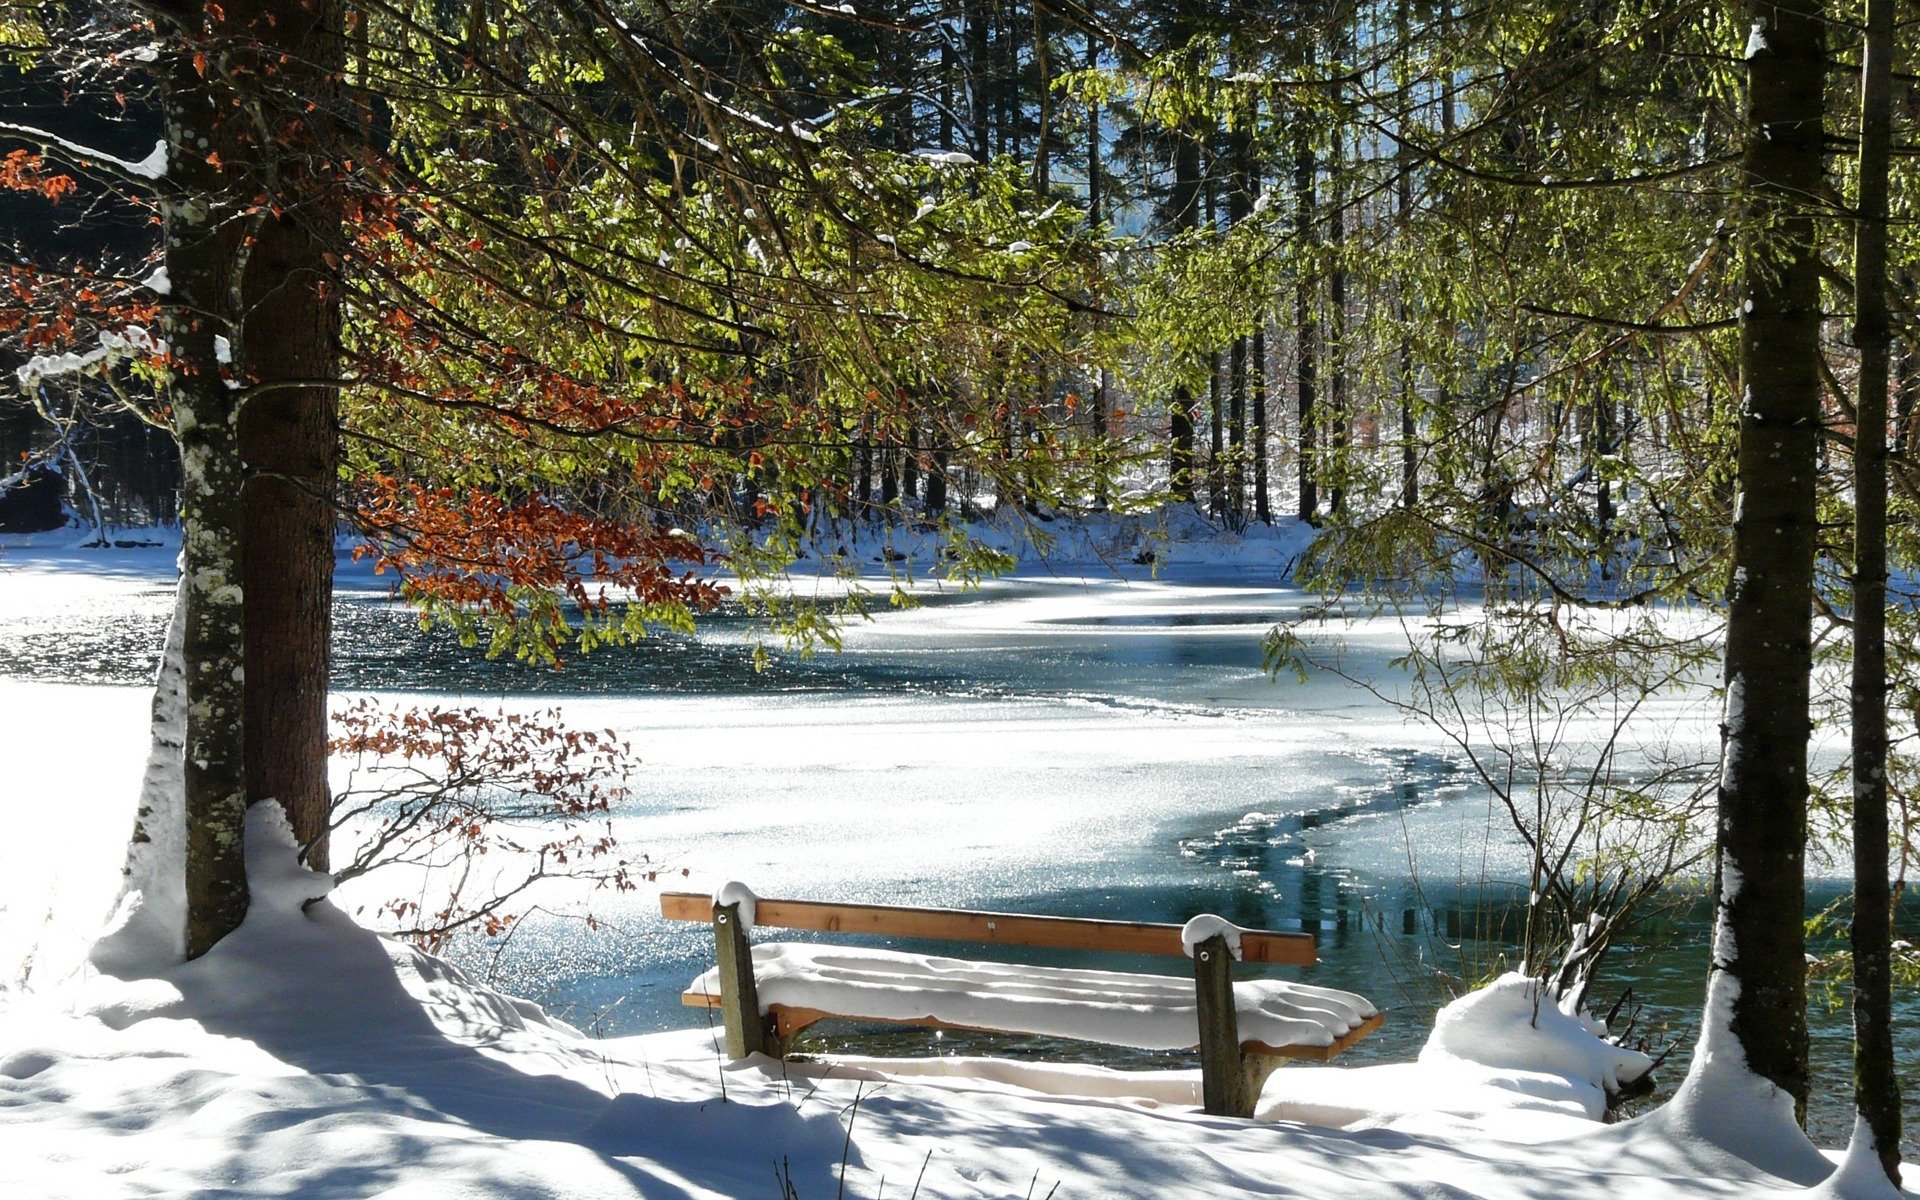 panchina inverno freddo fiume neve alberi romantico